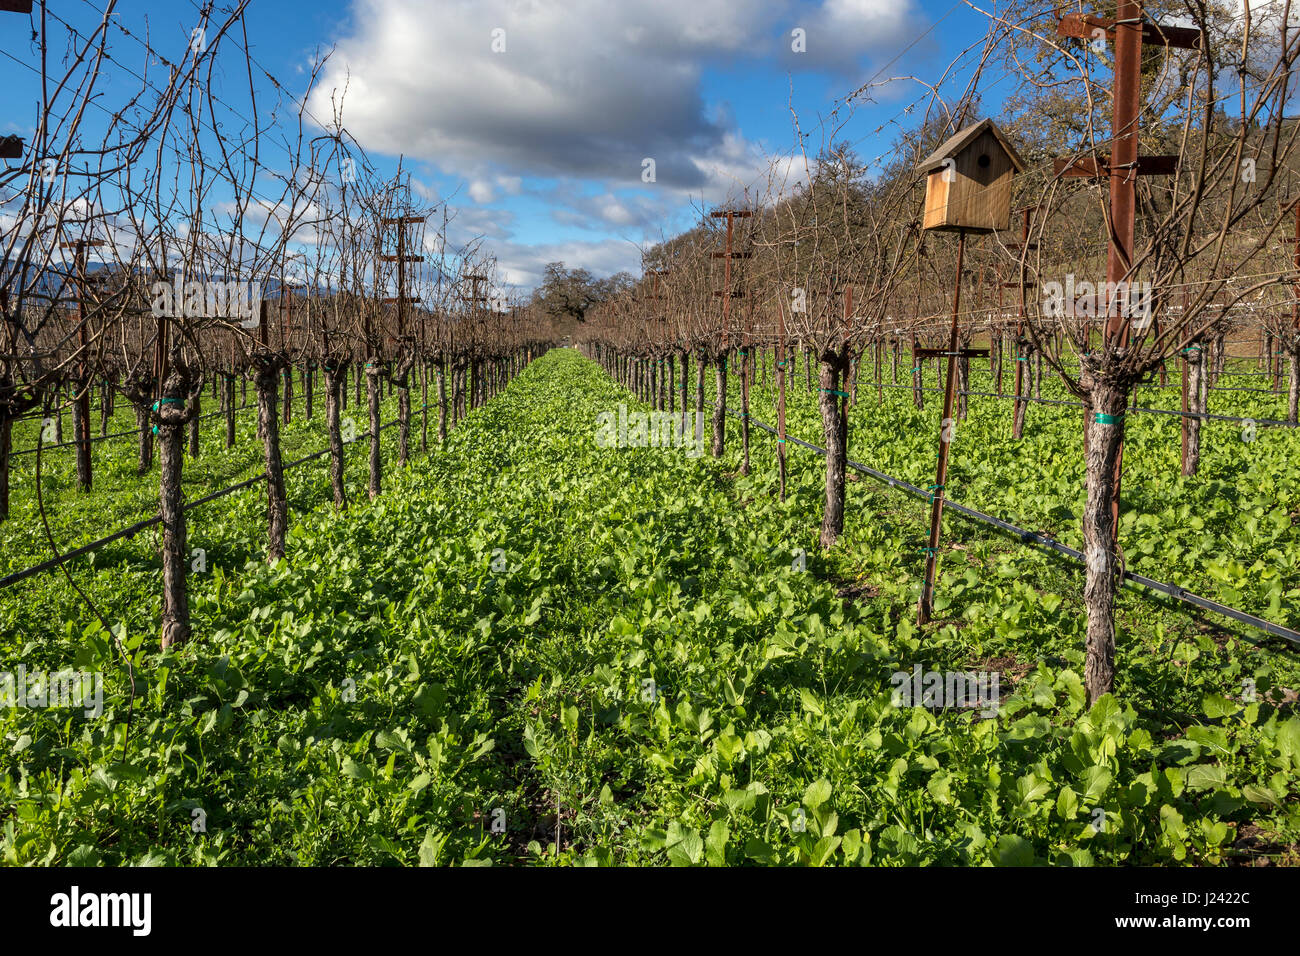 La vigne, raisin vigne, vignoble, côté ouest, le Silverado Trail, entre Skellenger Lane et Sage Canyon Road, Rutherford, Napa Valley, Californie Banque D'Images